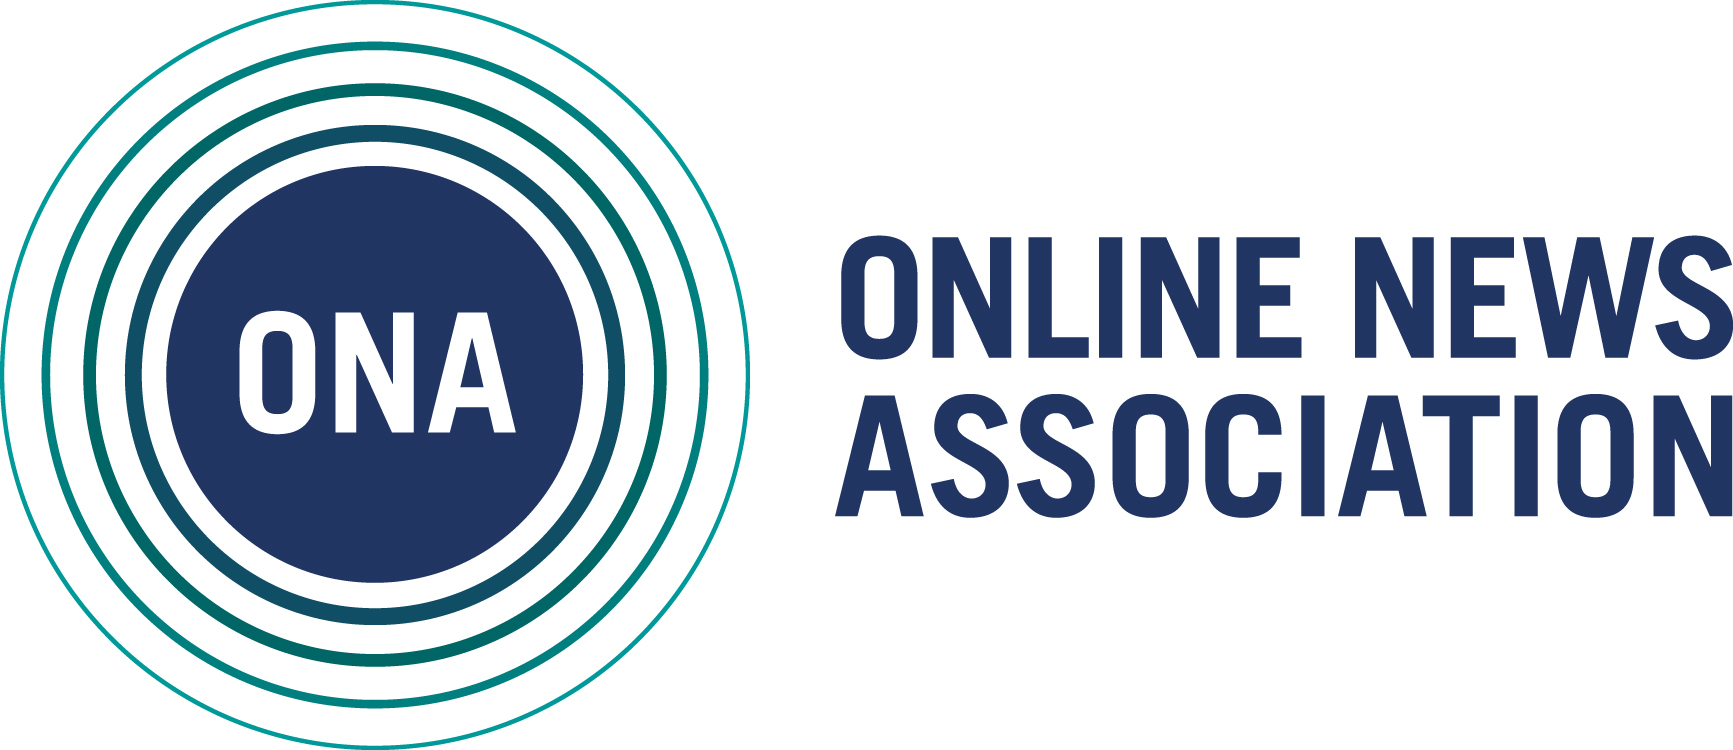 The Online News Association logo.